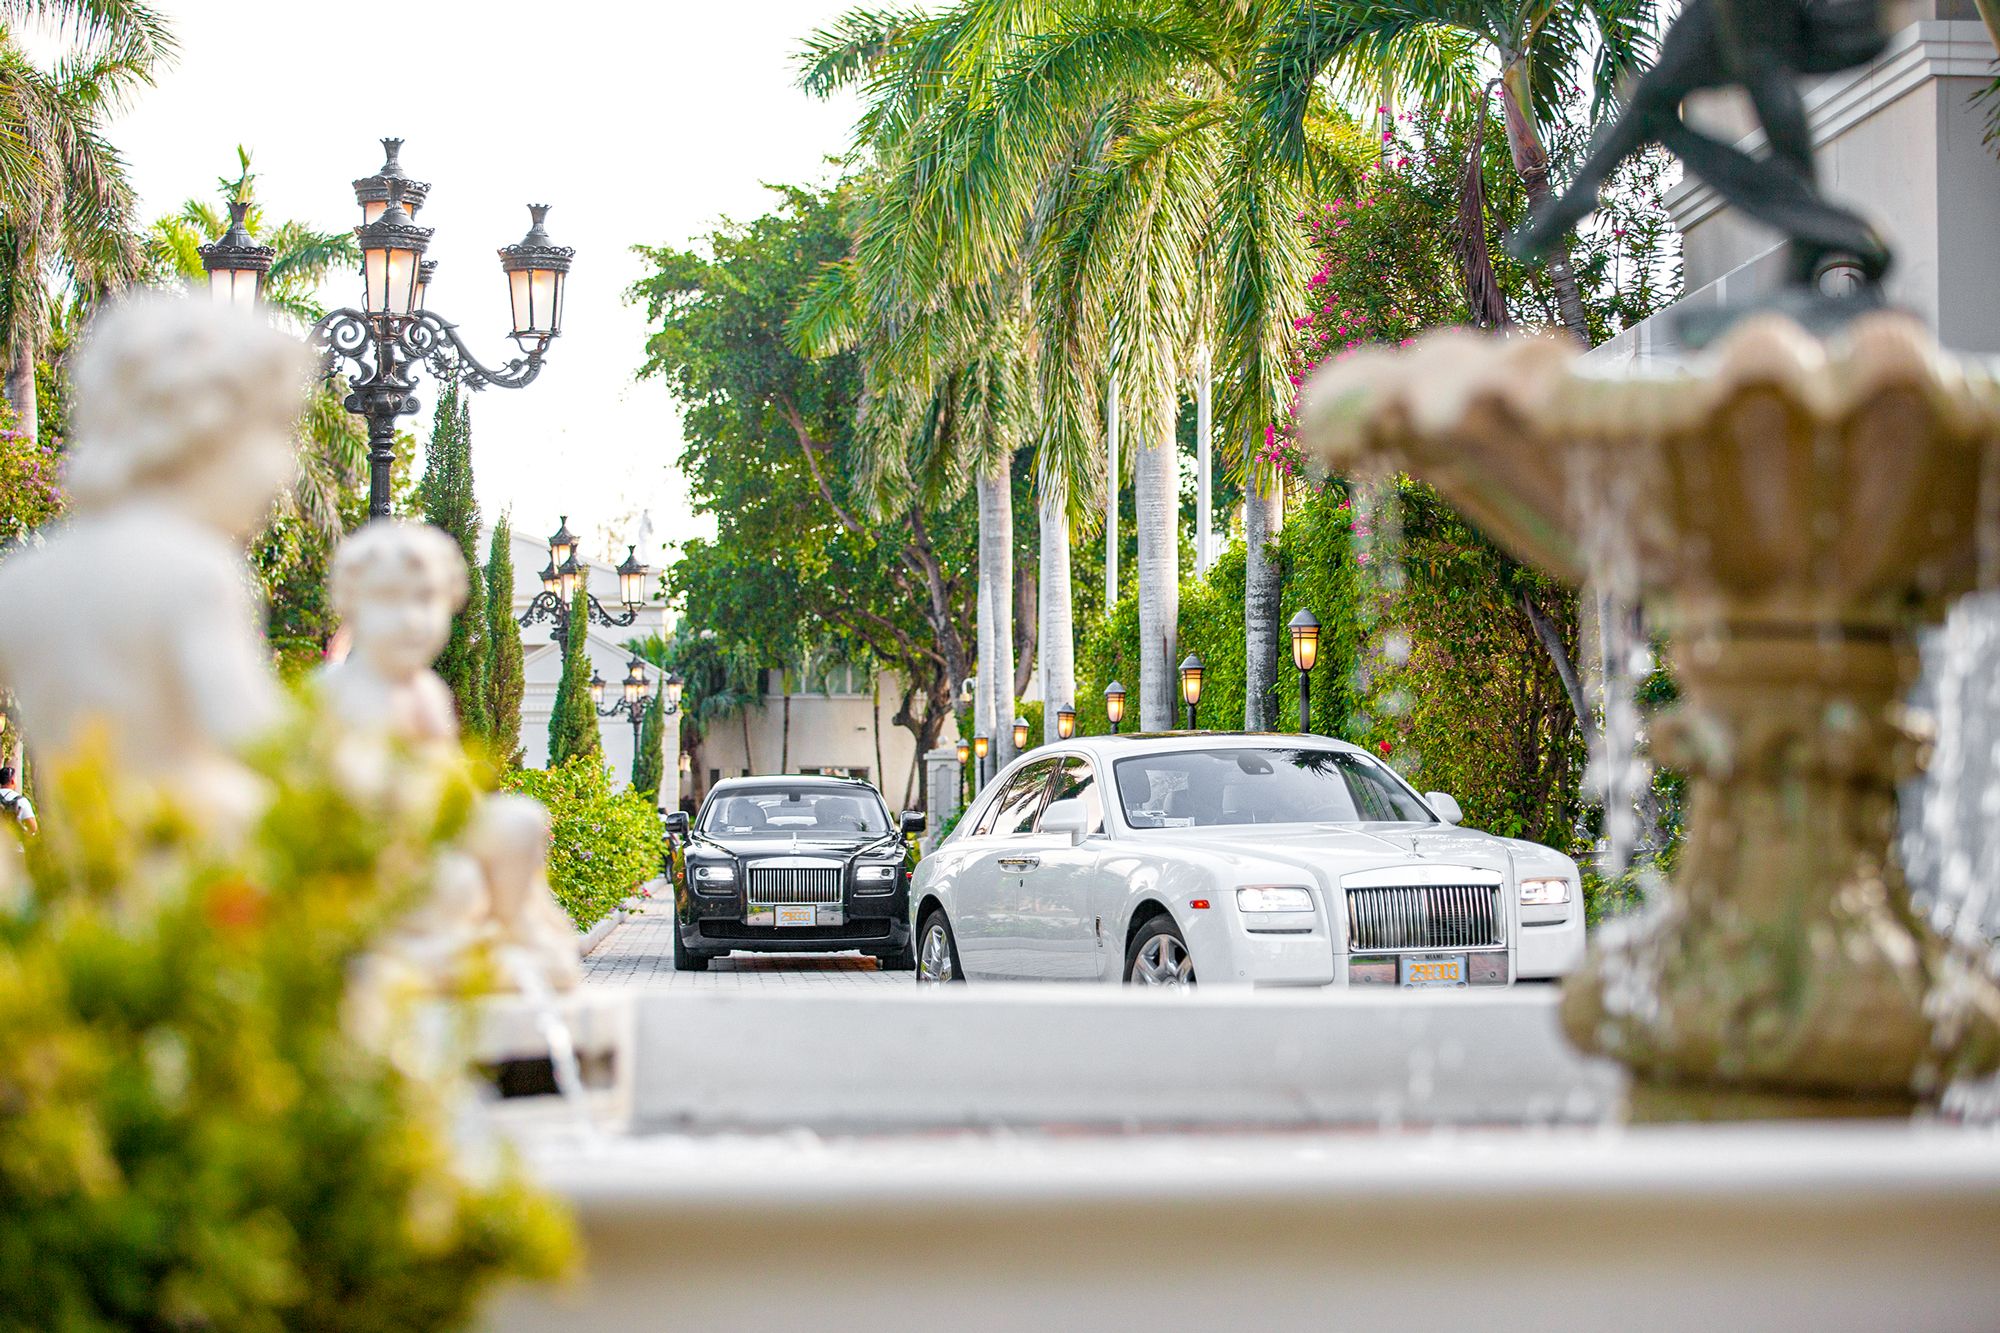 Sandals Royal Bahamian Cars Entrance